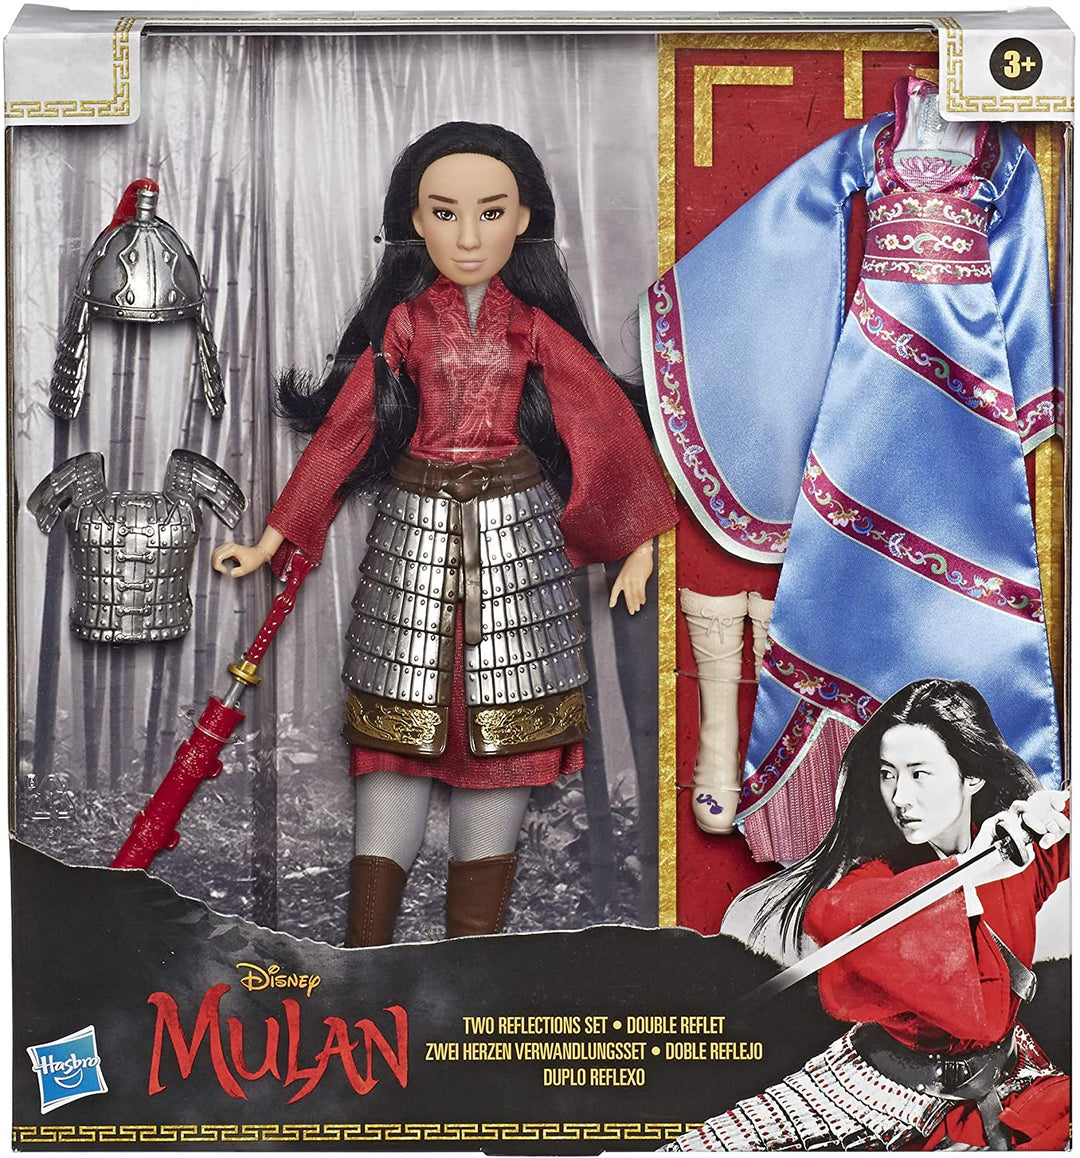 Disney Mulan 2 Reflections Set, bambola alla moda con 2 abiti e accessori, giocattolo ispirato al film Mulan di Disney